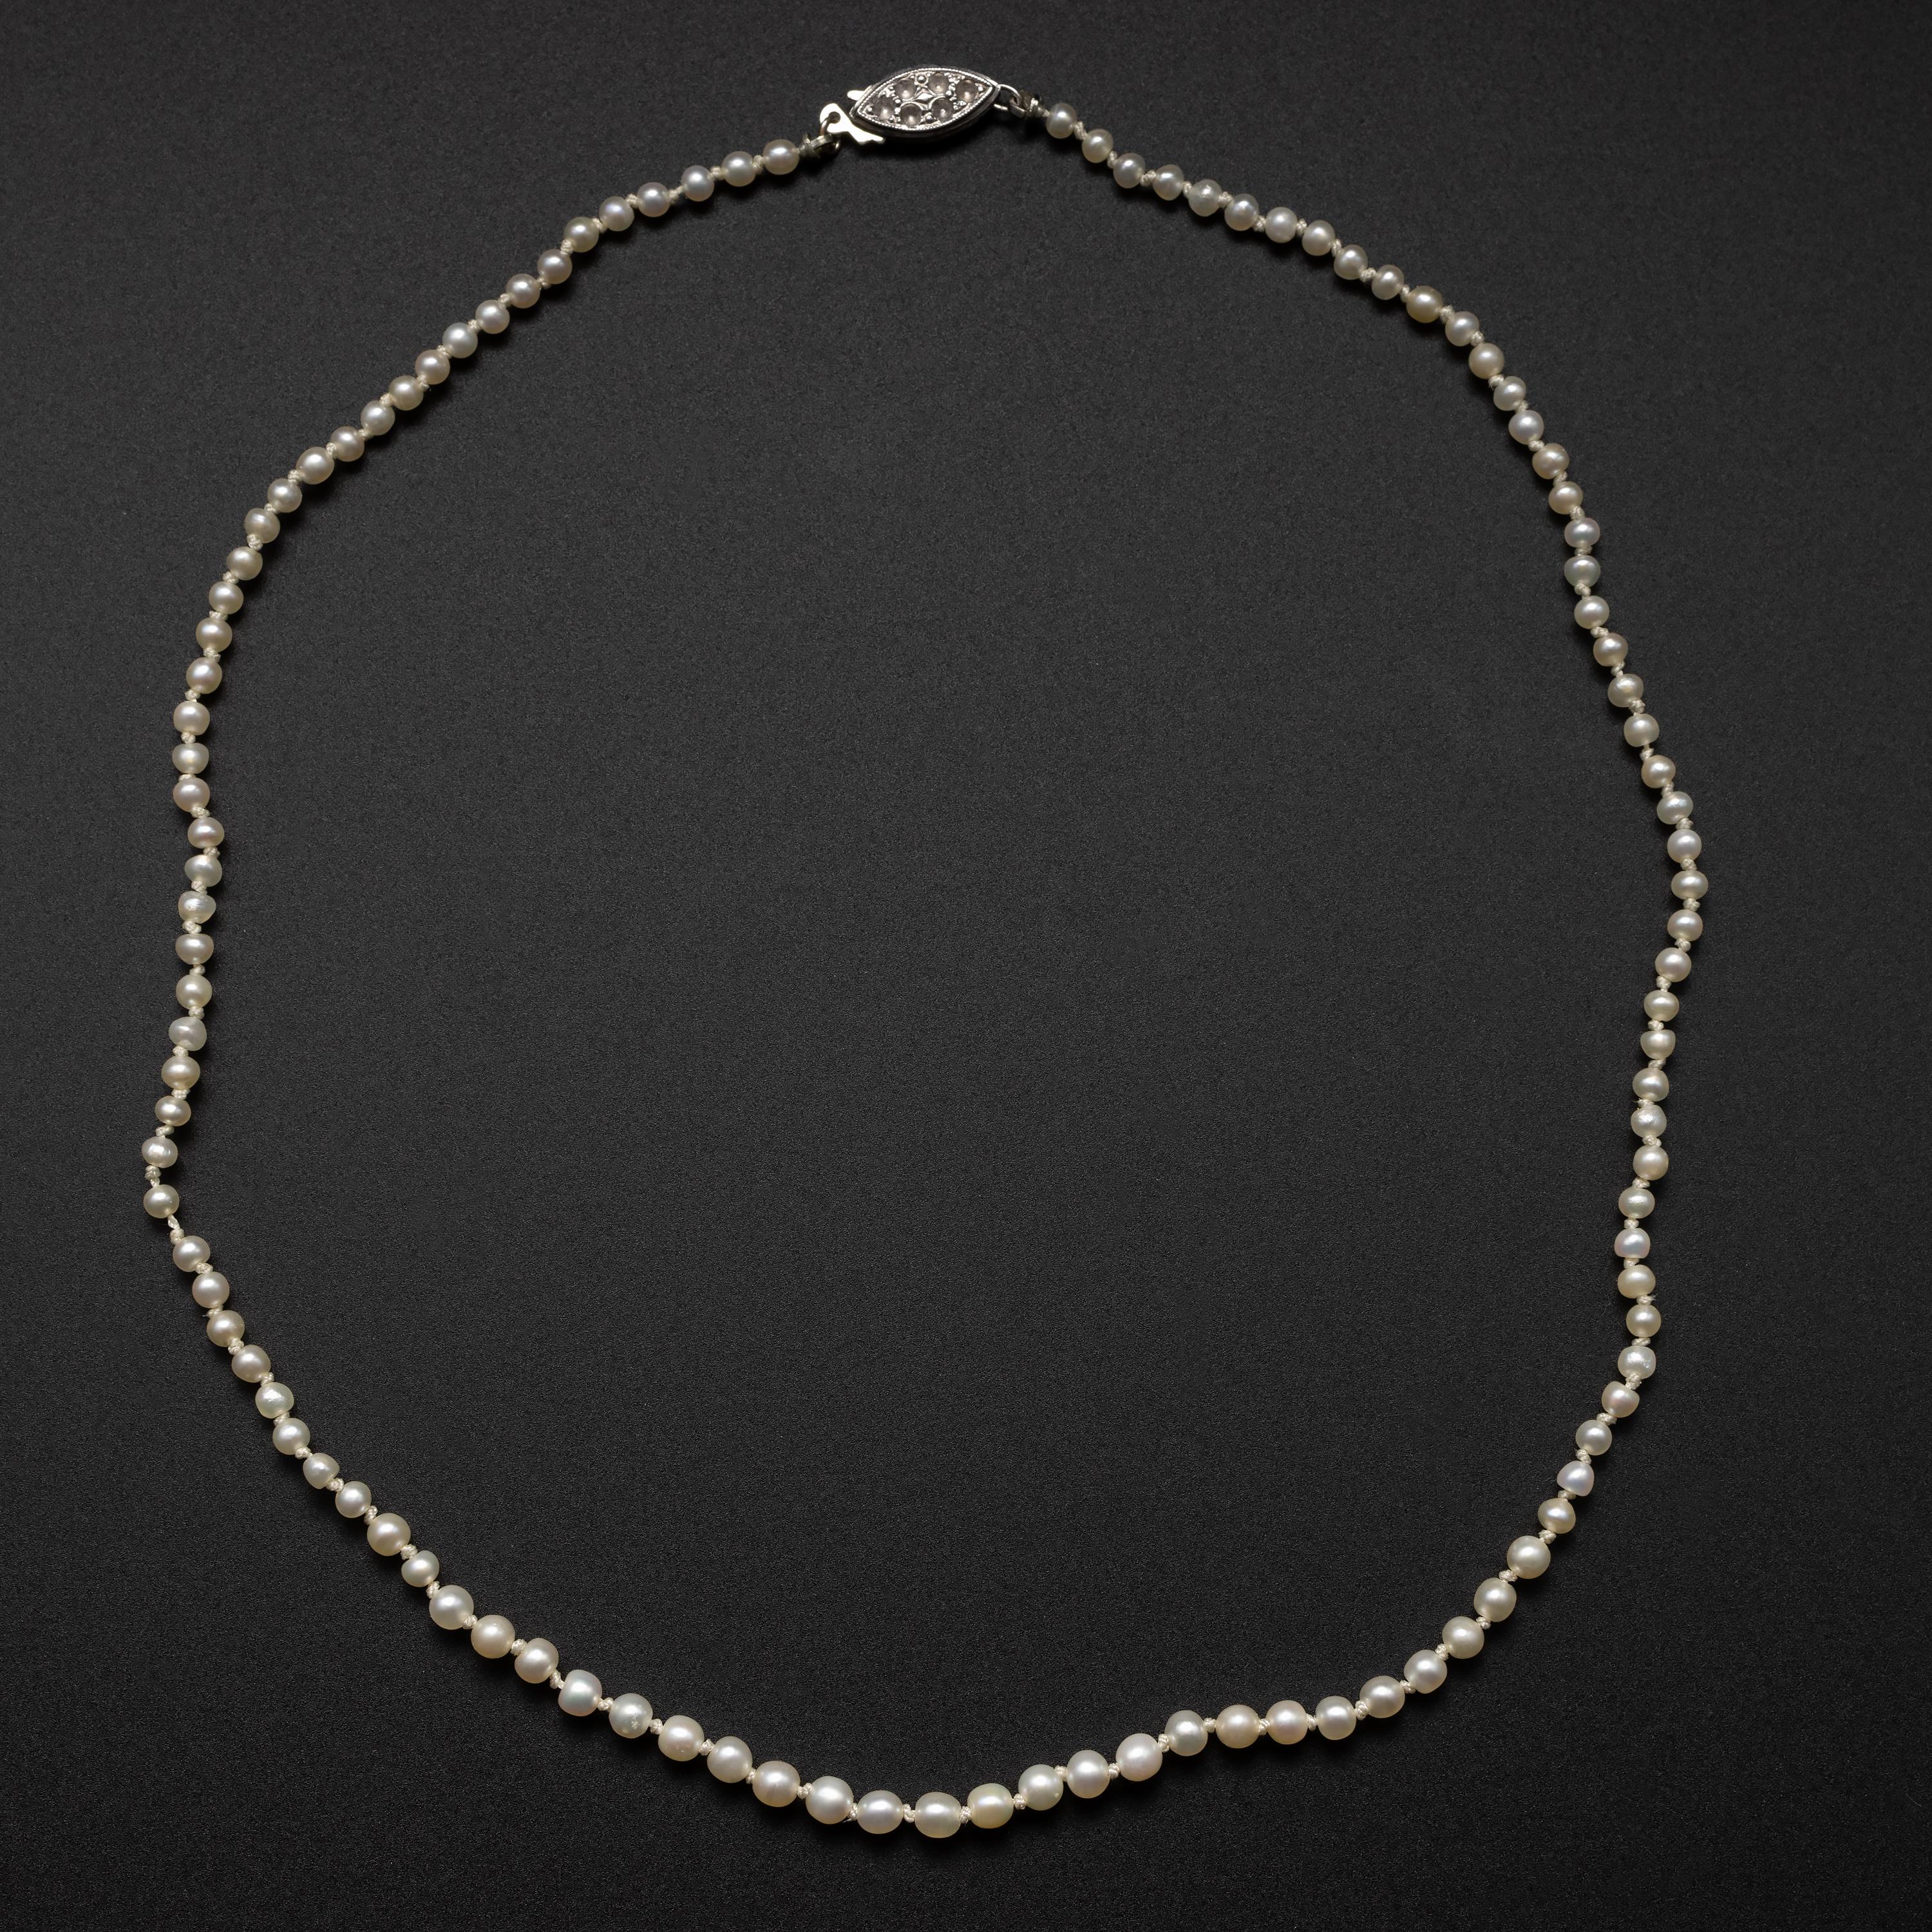 Diese Art Deco-Ära (ca. 1930er Jahre) Perlenkette misst eine kurze 15 ½ Zoll und besteht aus 111 natürlichen, ungezüchteten Salzwasserperlen. Die kleinen, leuchtenden Perlen sind zwischen 2,64 und 3,62 mm groß und weisen einen schönen Orient auf, d.